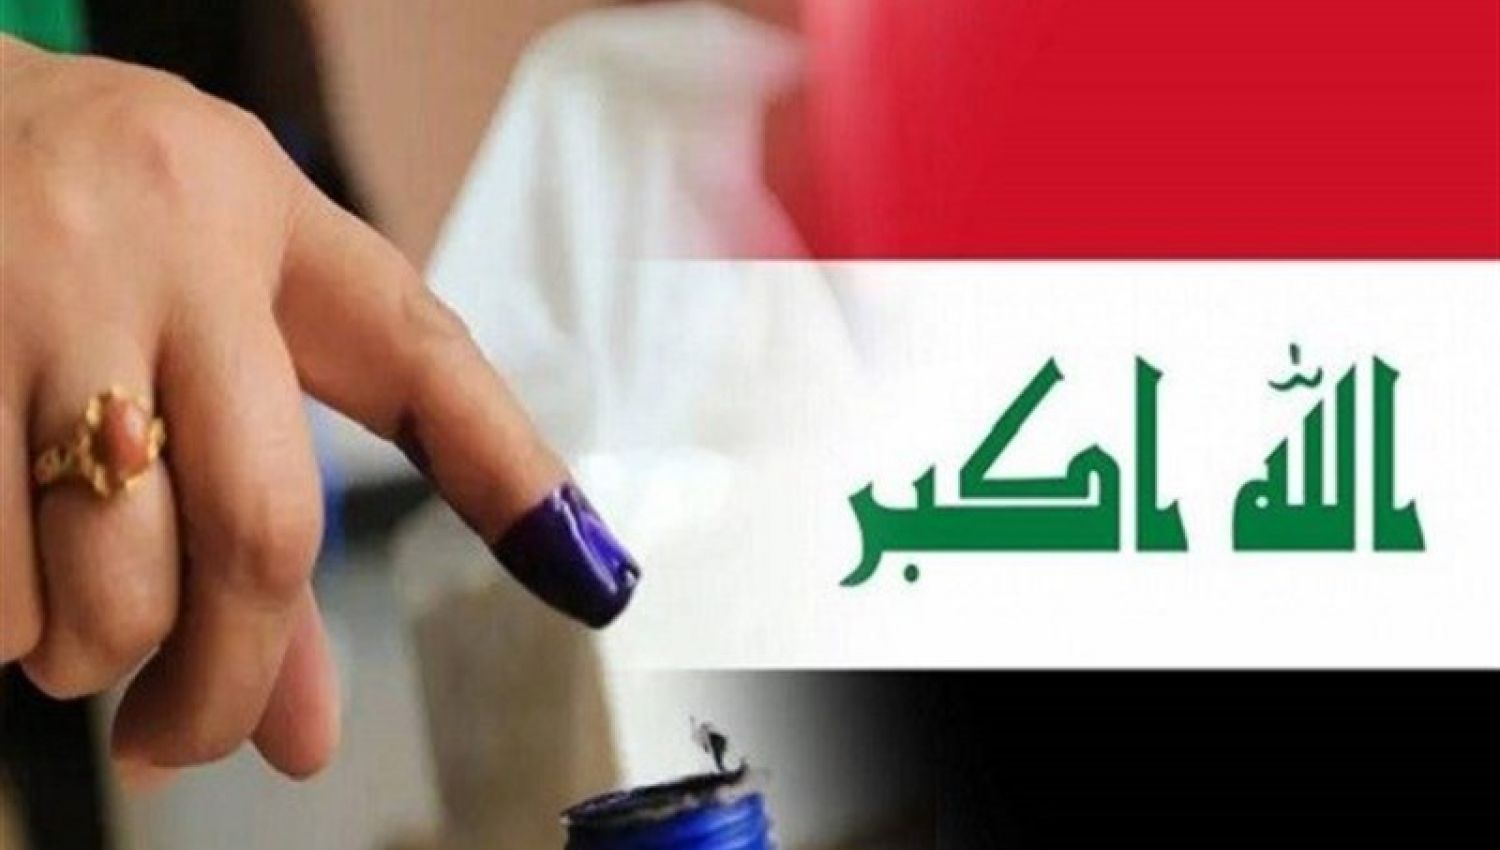  الانتخابات العراقية: عن أسباب المقاطعة والمشاركة الفاعلة